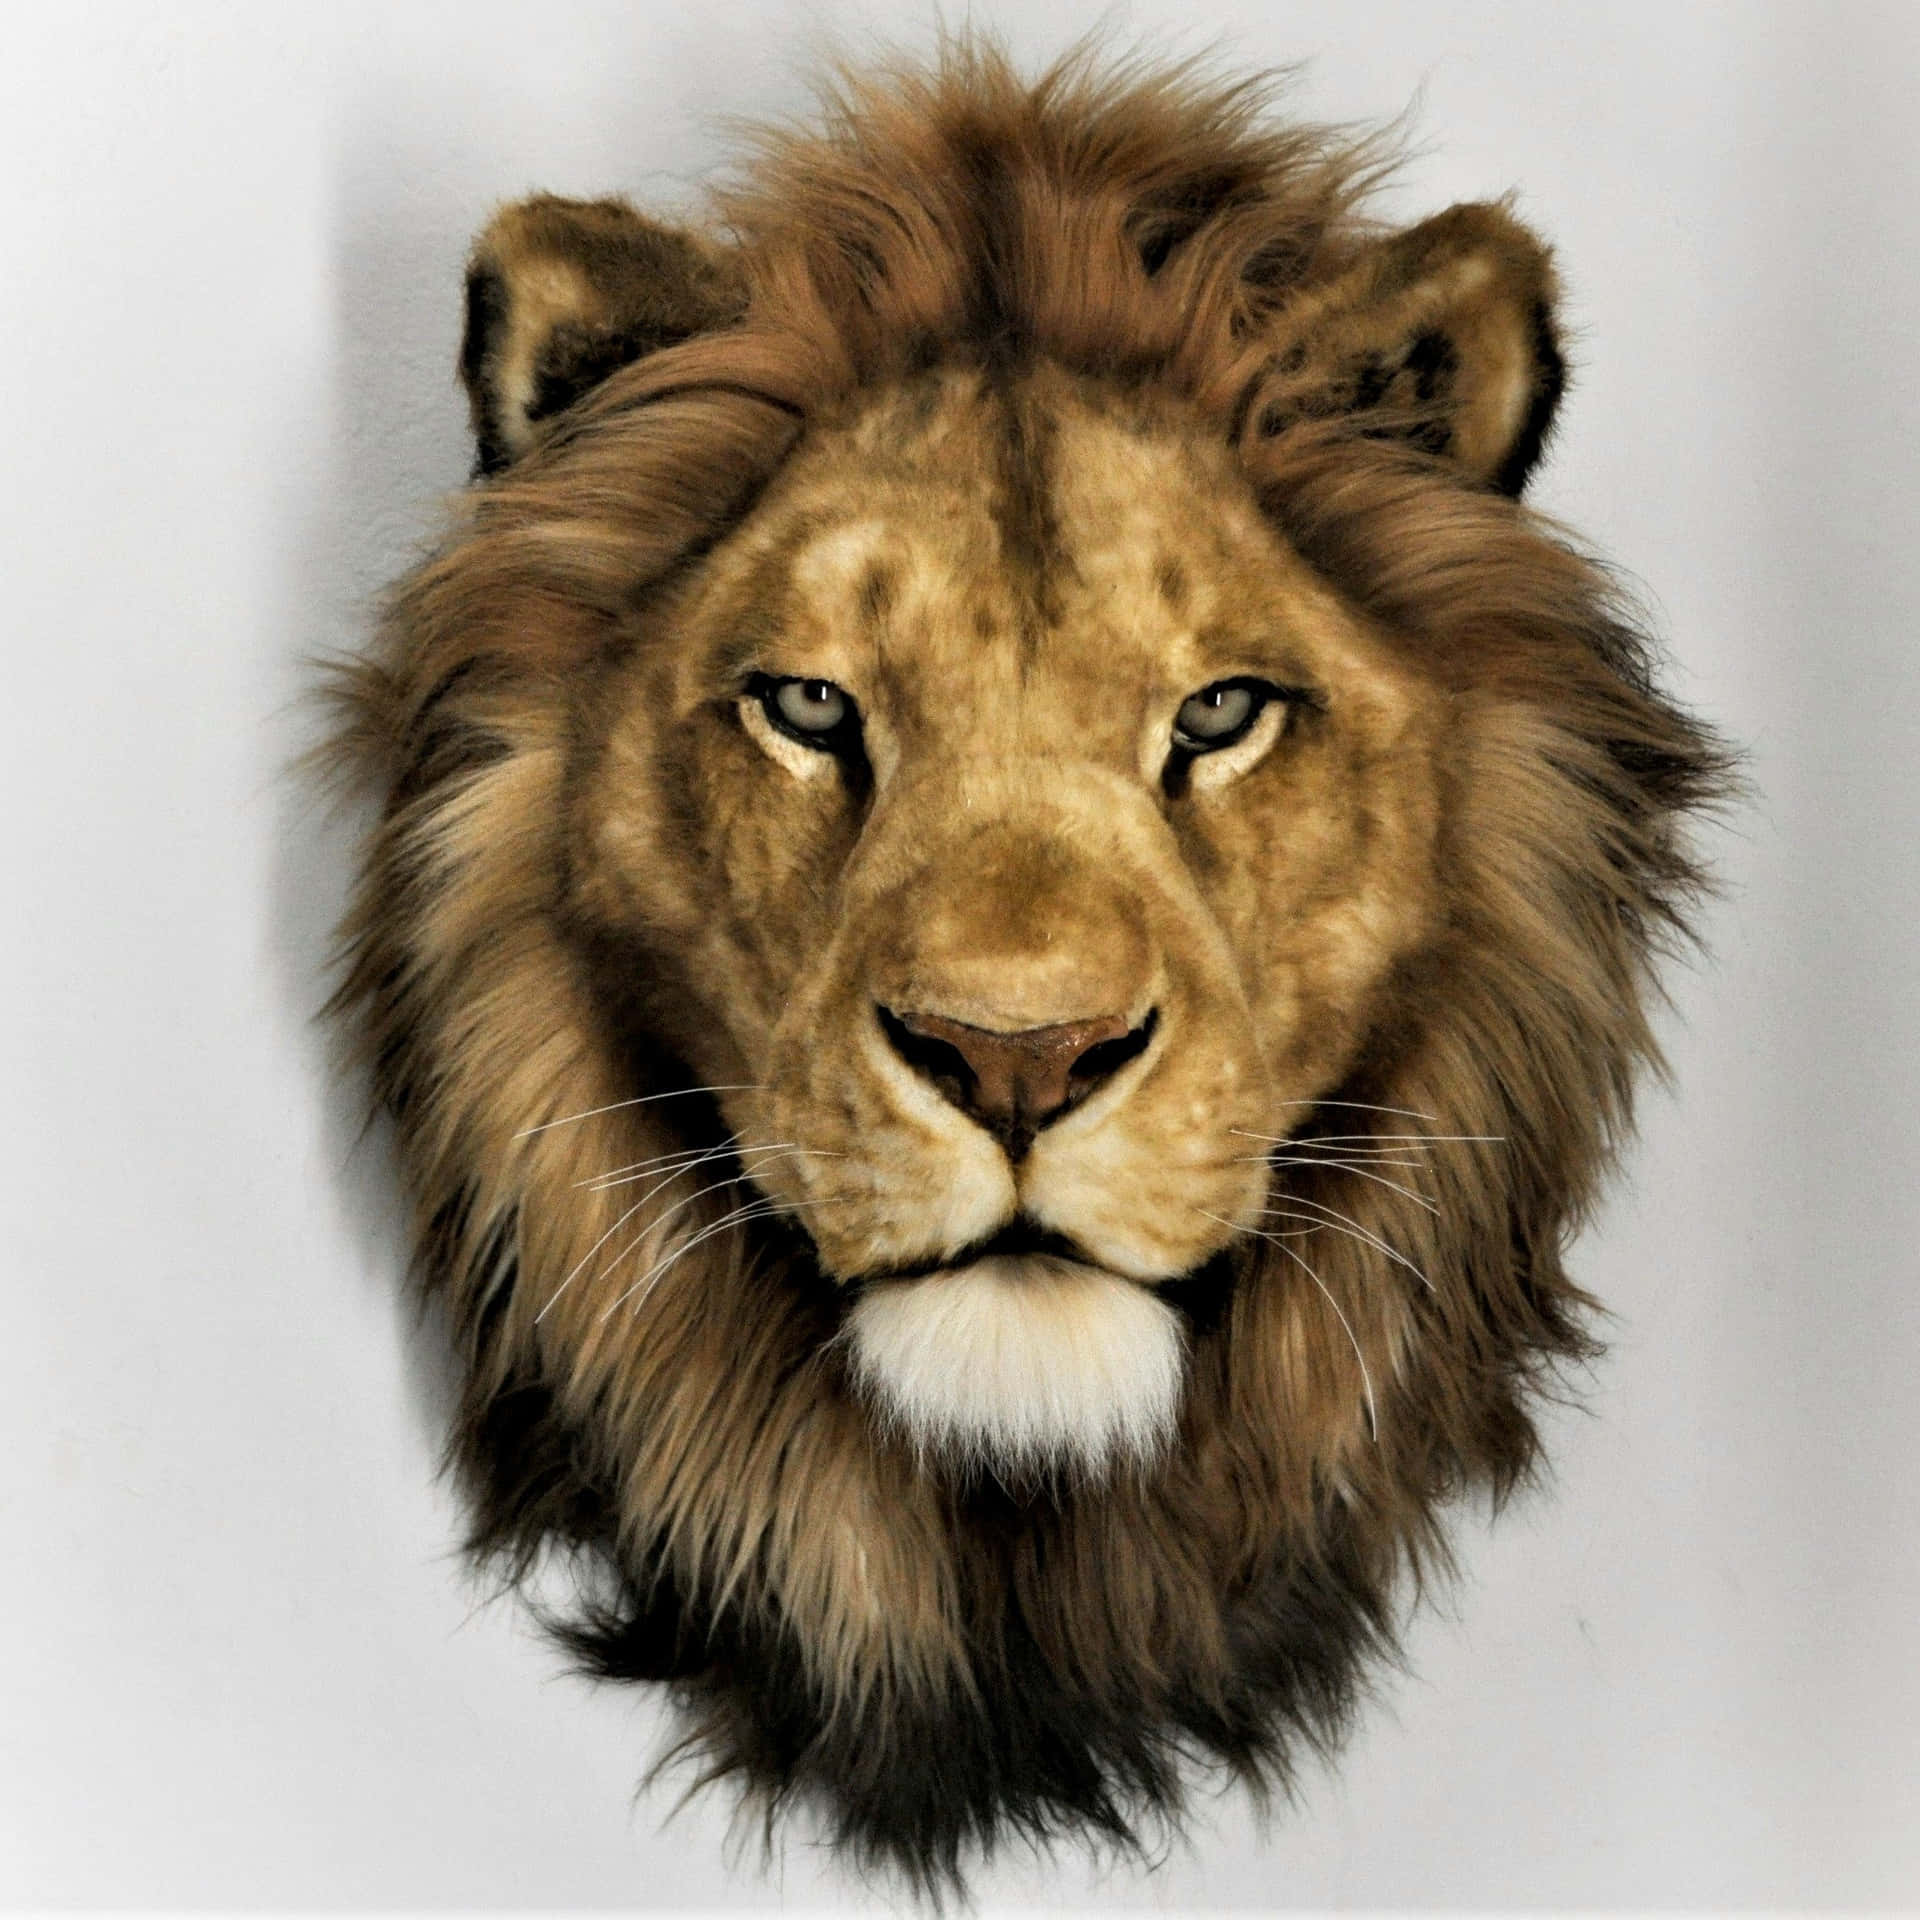 Majestic Lion Head Portrait